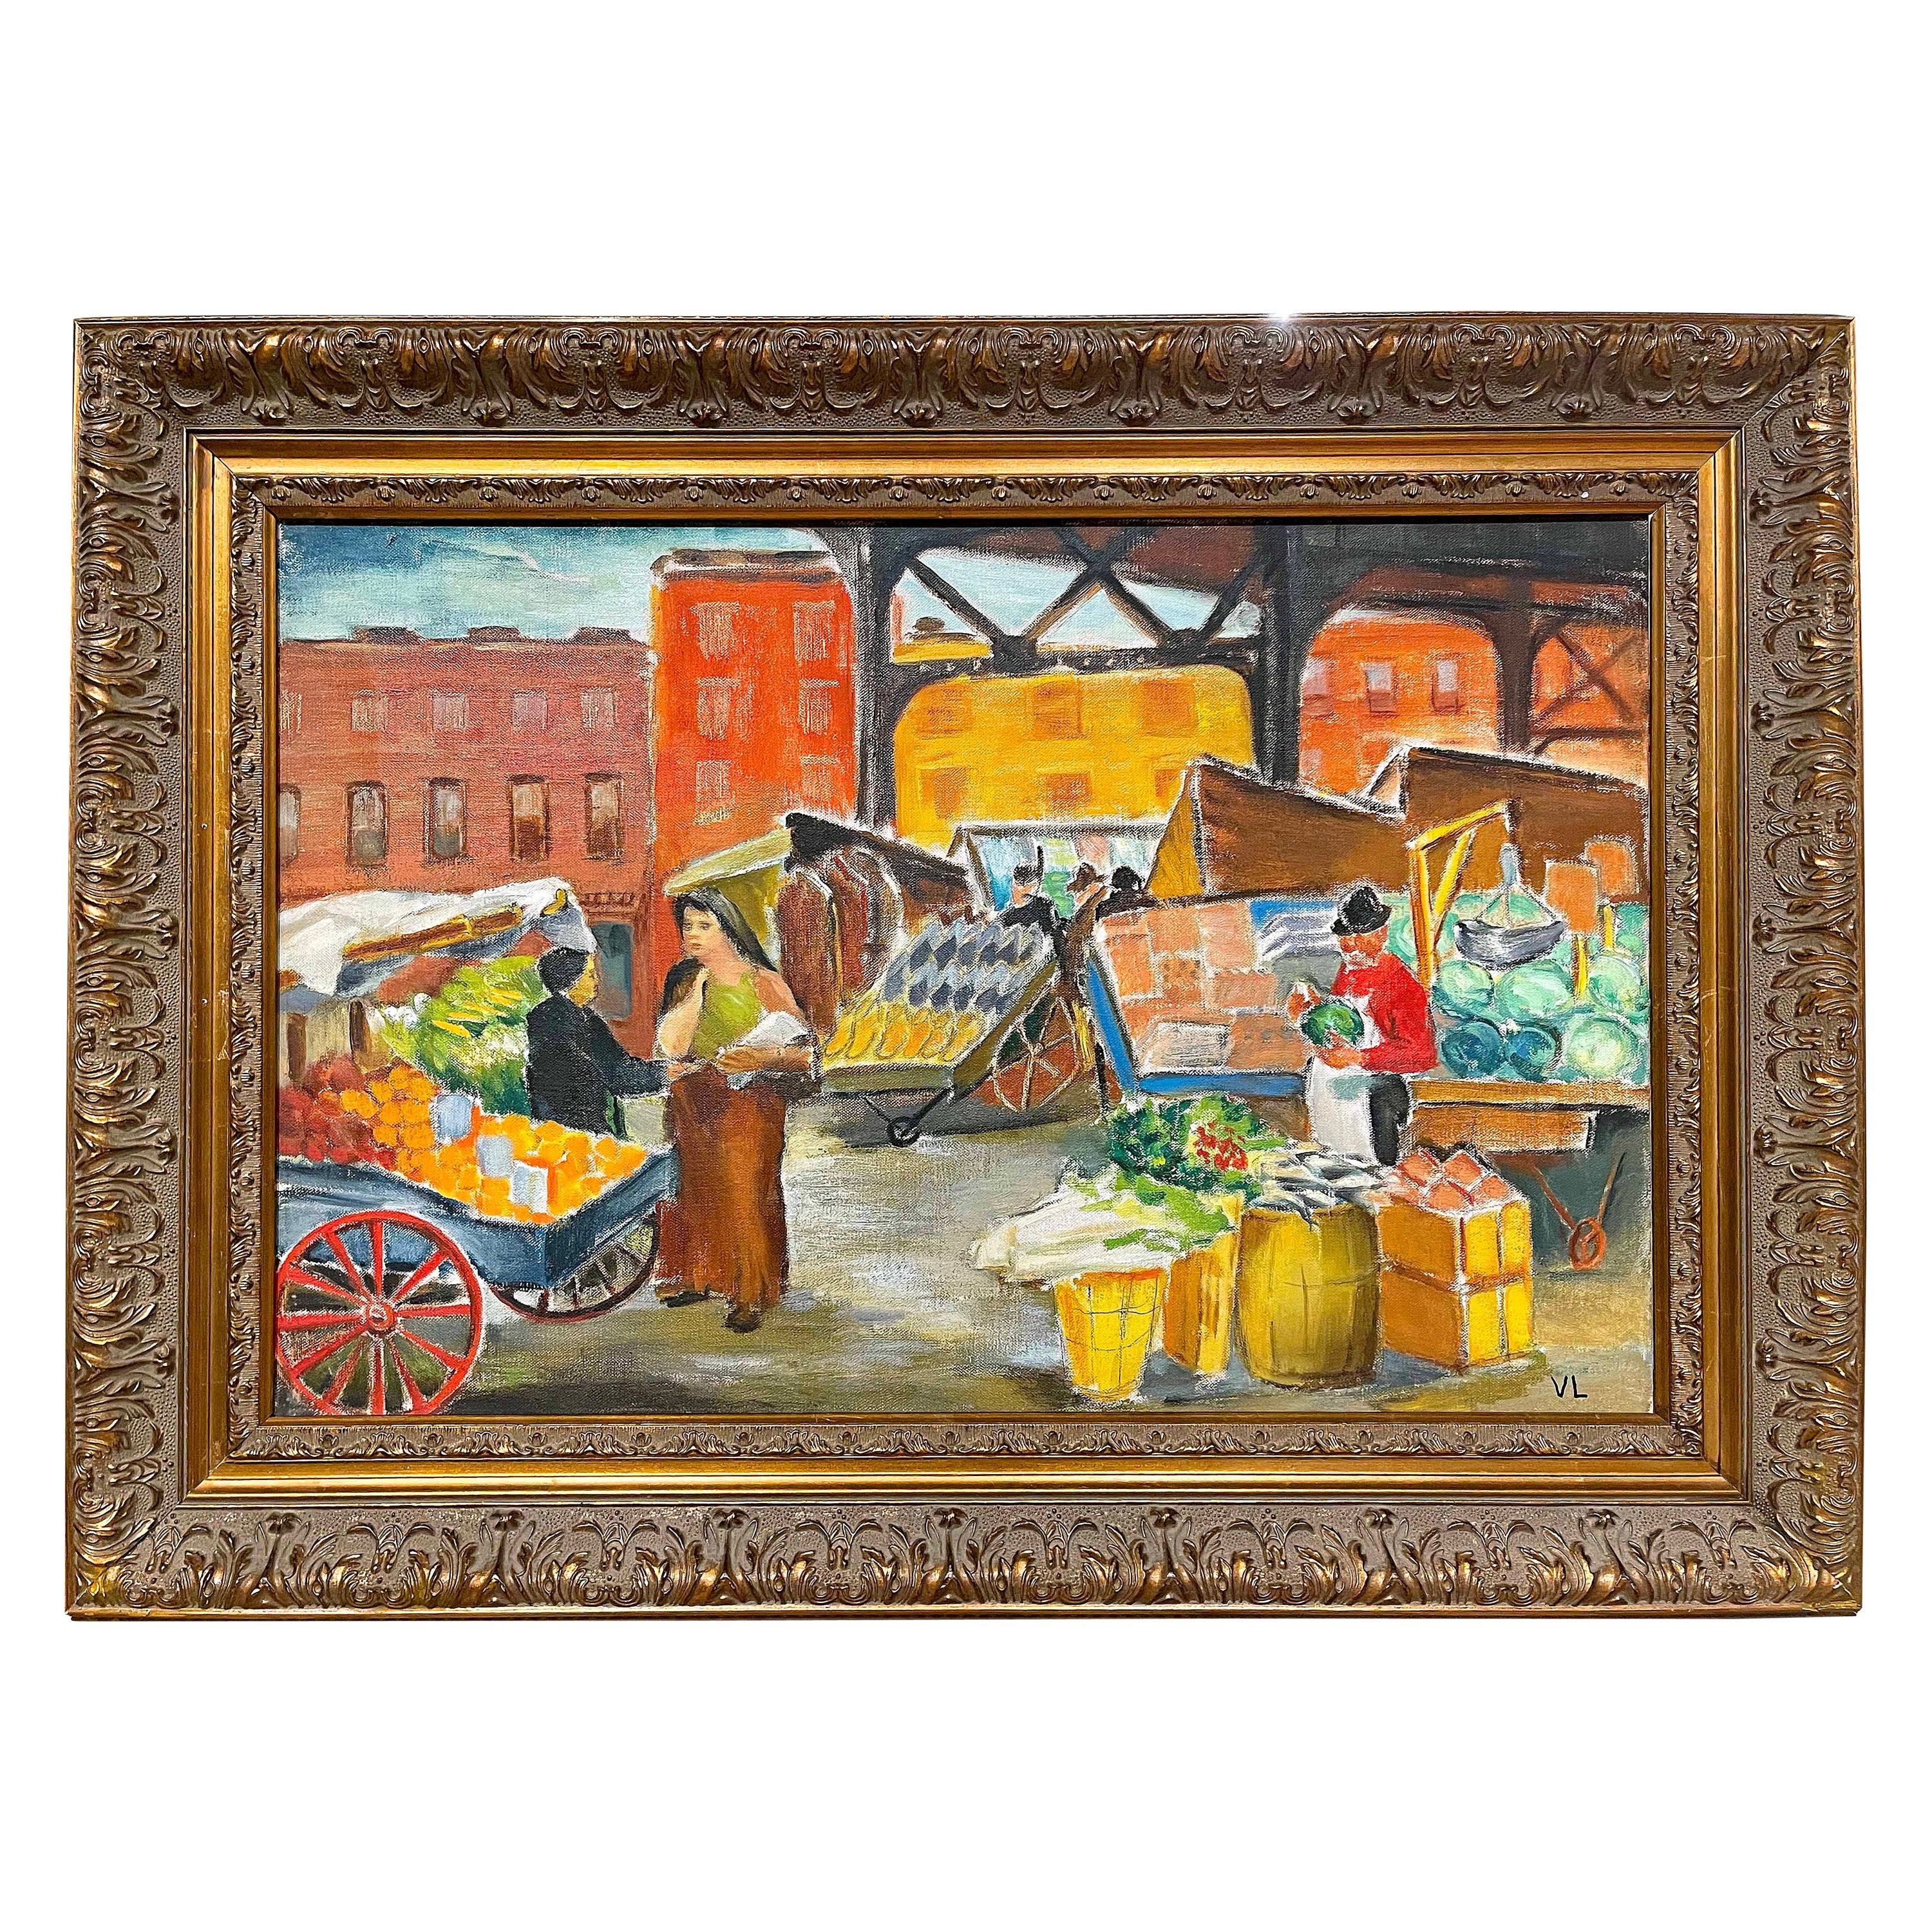 "Under the El", WPA-Gemälde des Marktes von Philadelphia von Van Loan